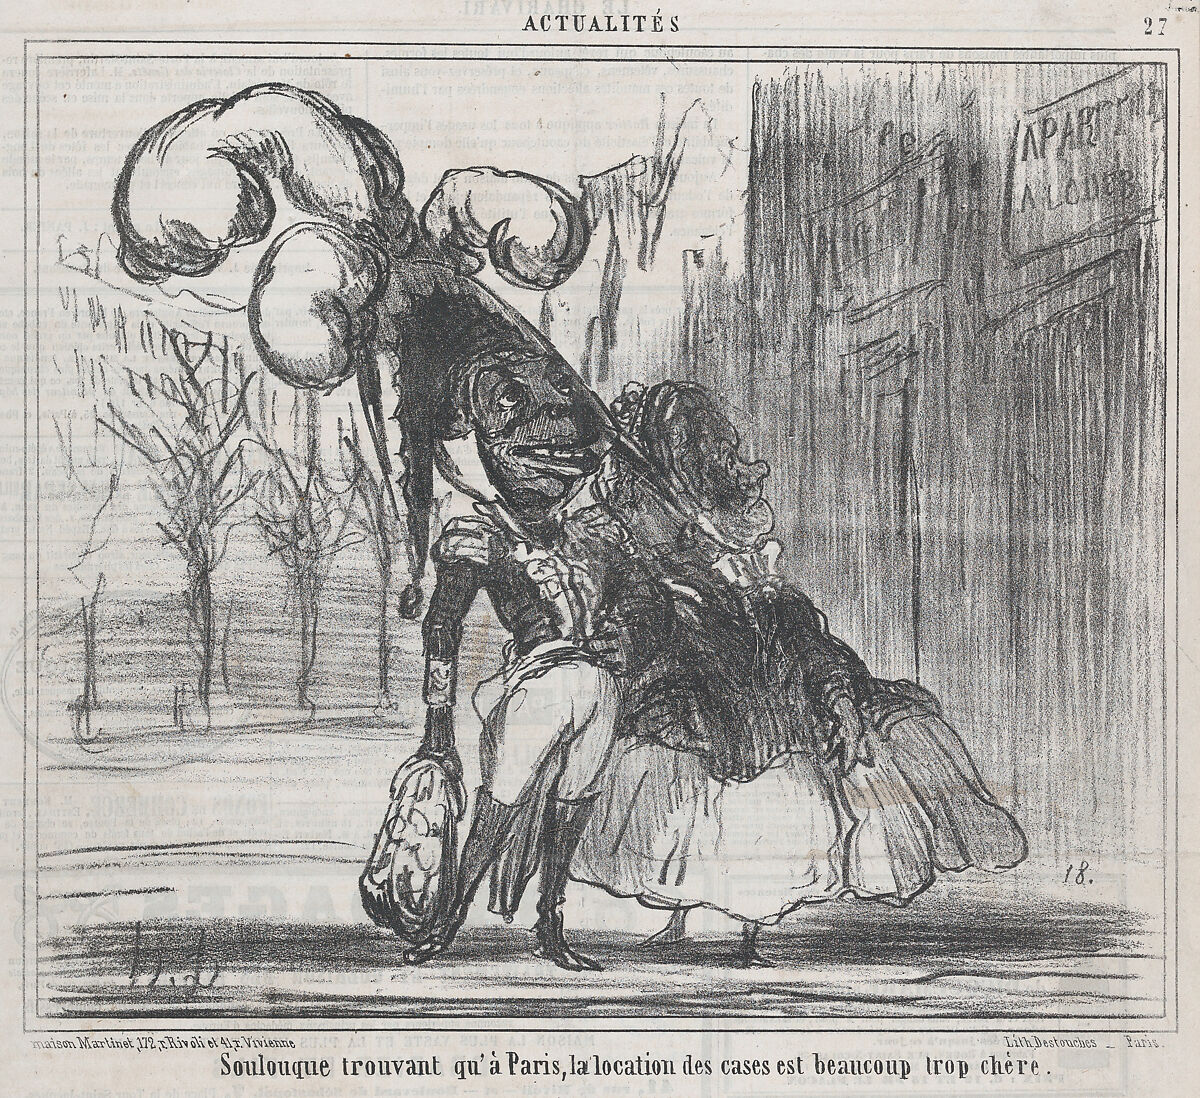 Soulouque trouvant qu'à Paris, la location des cases est beaucoup trop chère, from Actualités, published in Le Charivari, April 9, 1859, Honoré Daumier (French, Marseilles 1808–1879 Valmondois), Lithograph on newsprint 